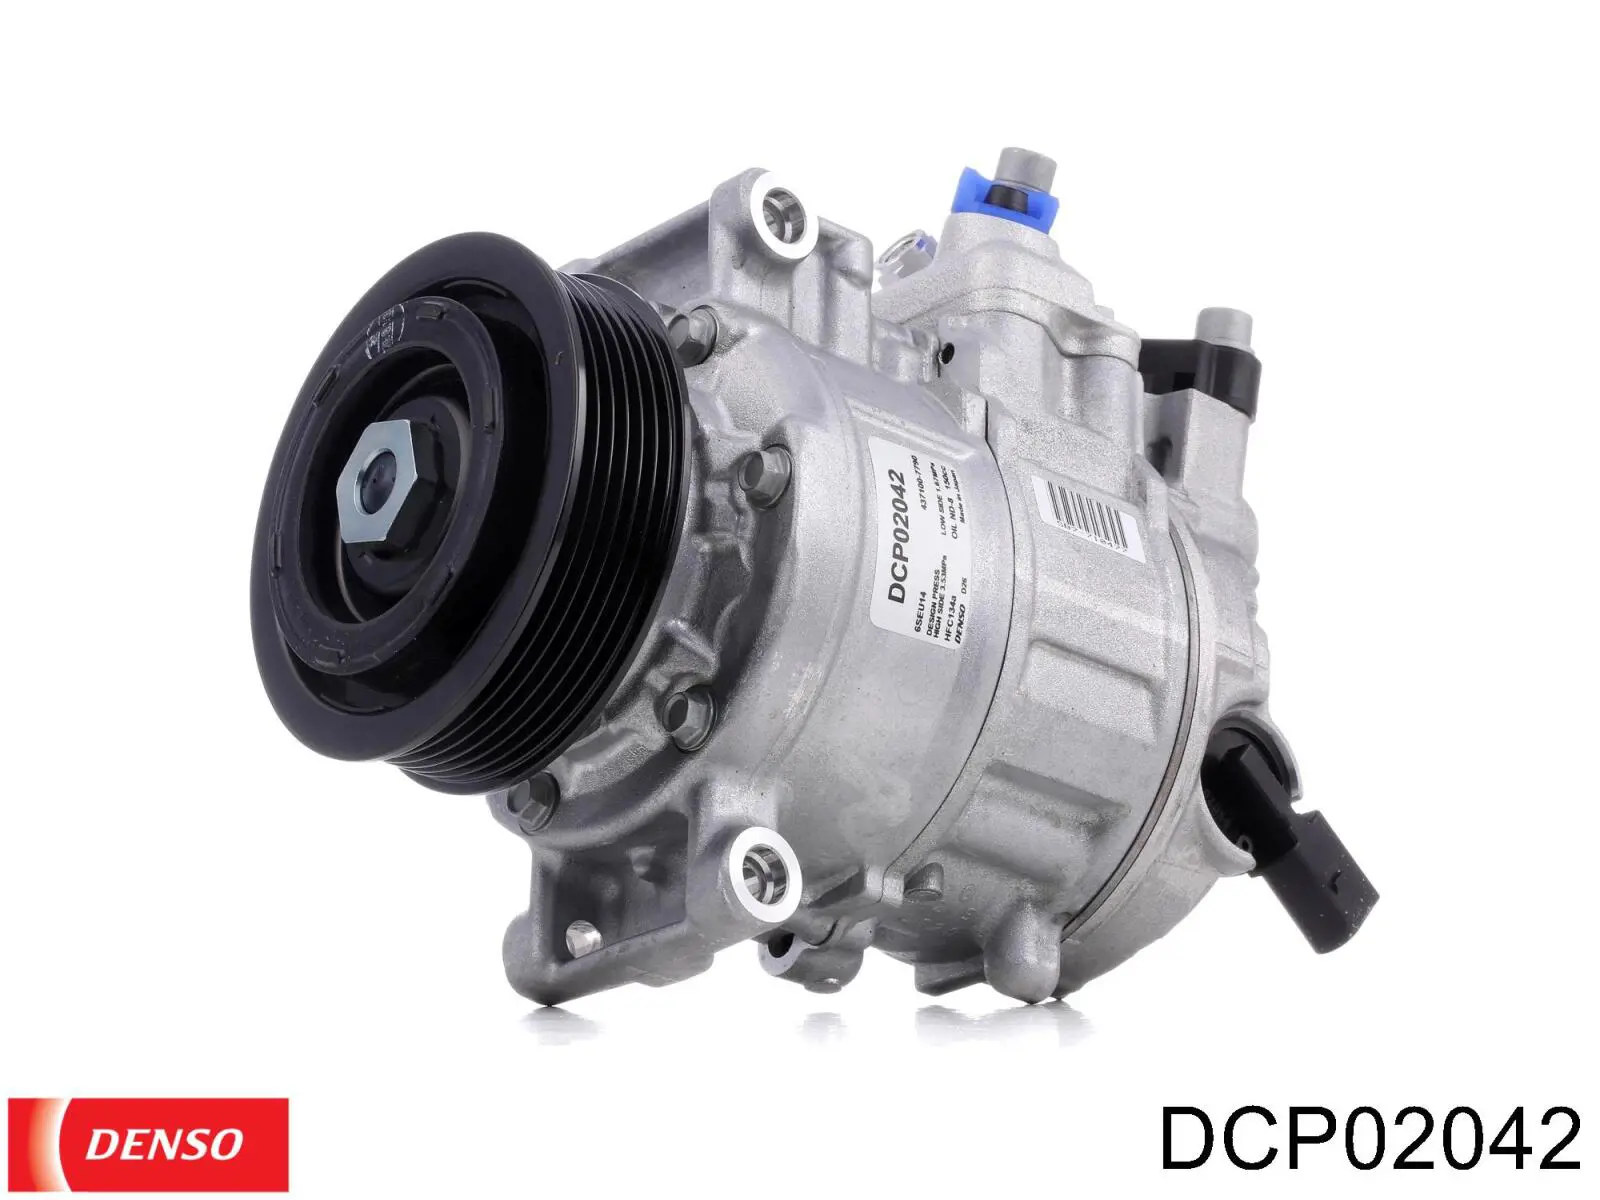 Compresor de aire acondicionado DCP02042 Denso